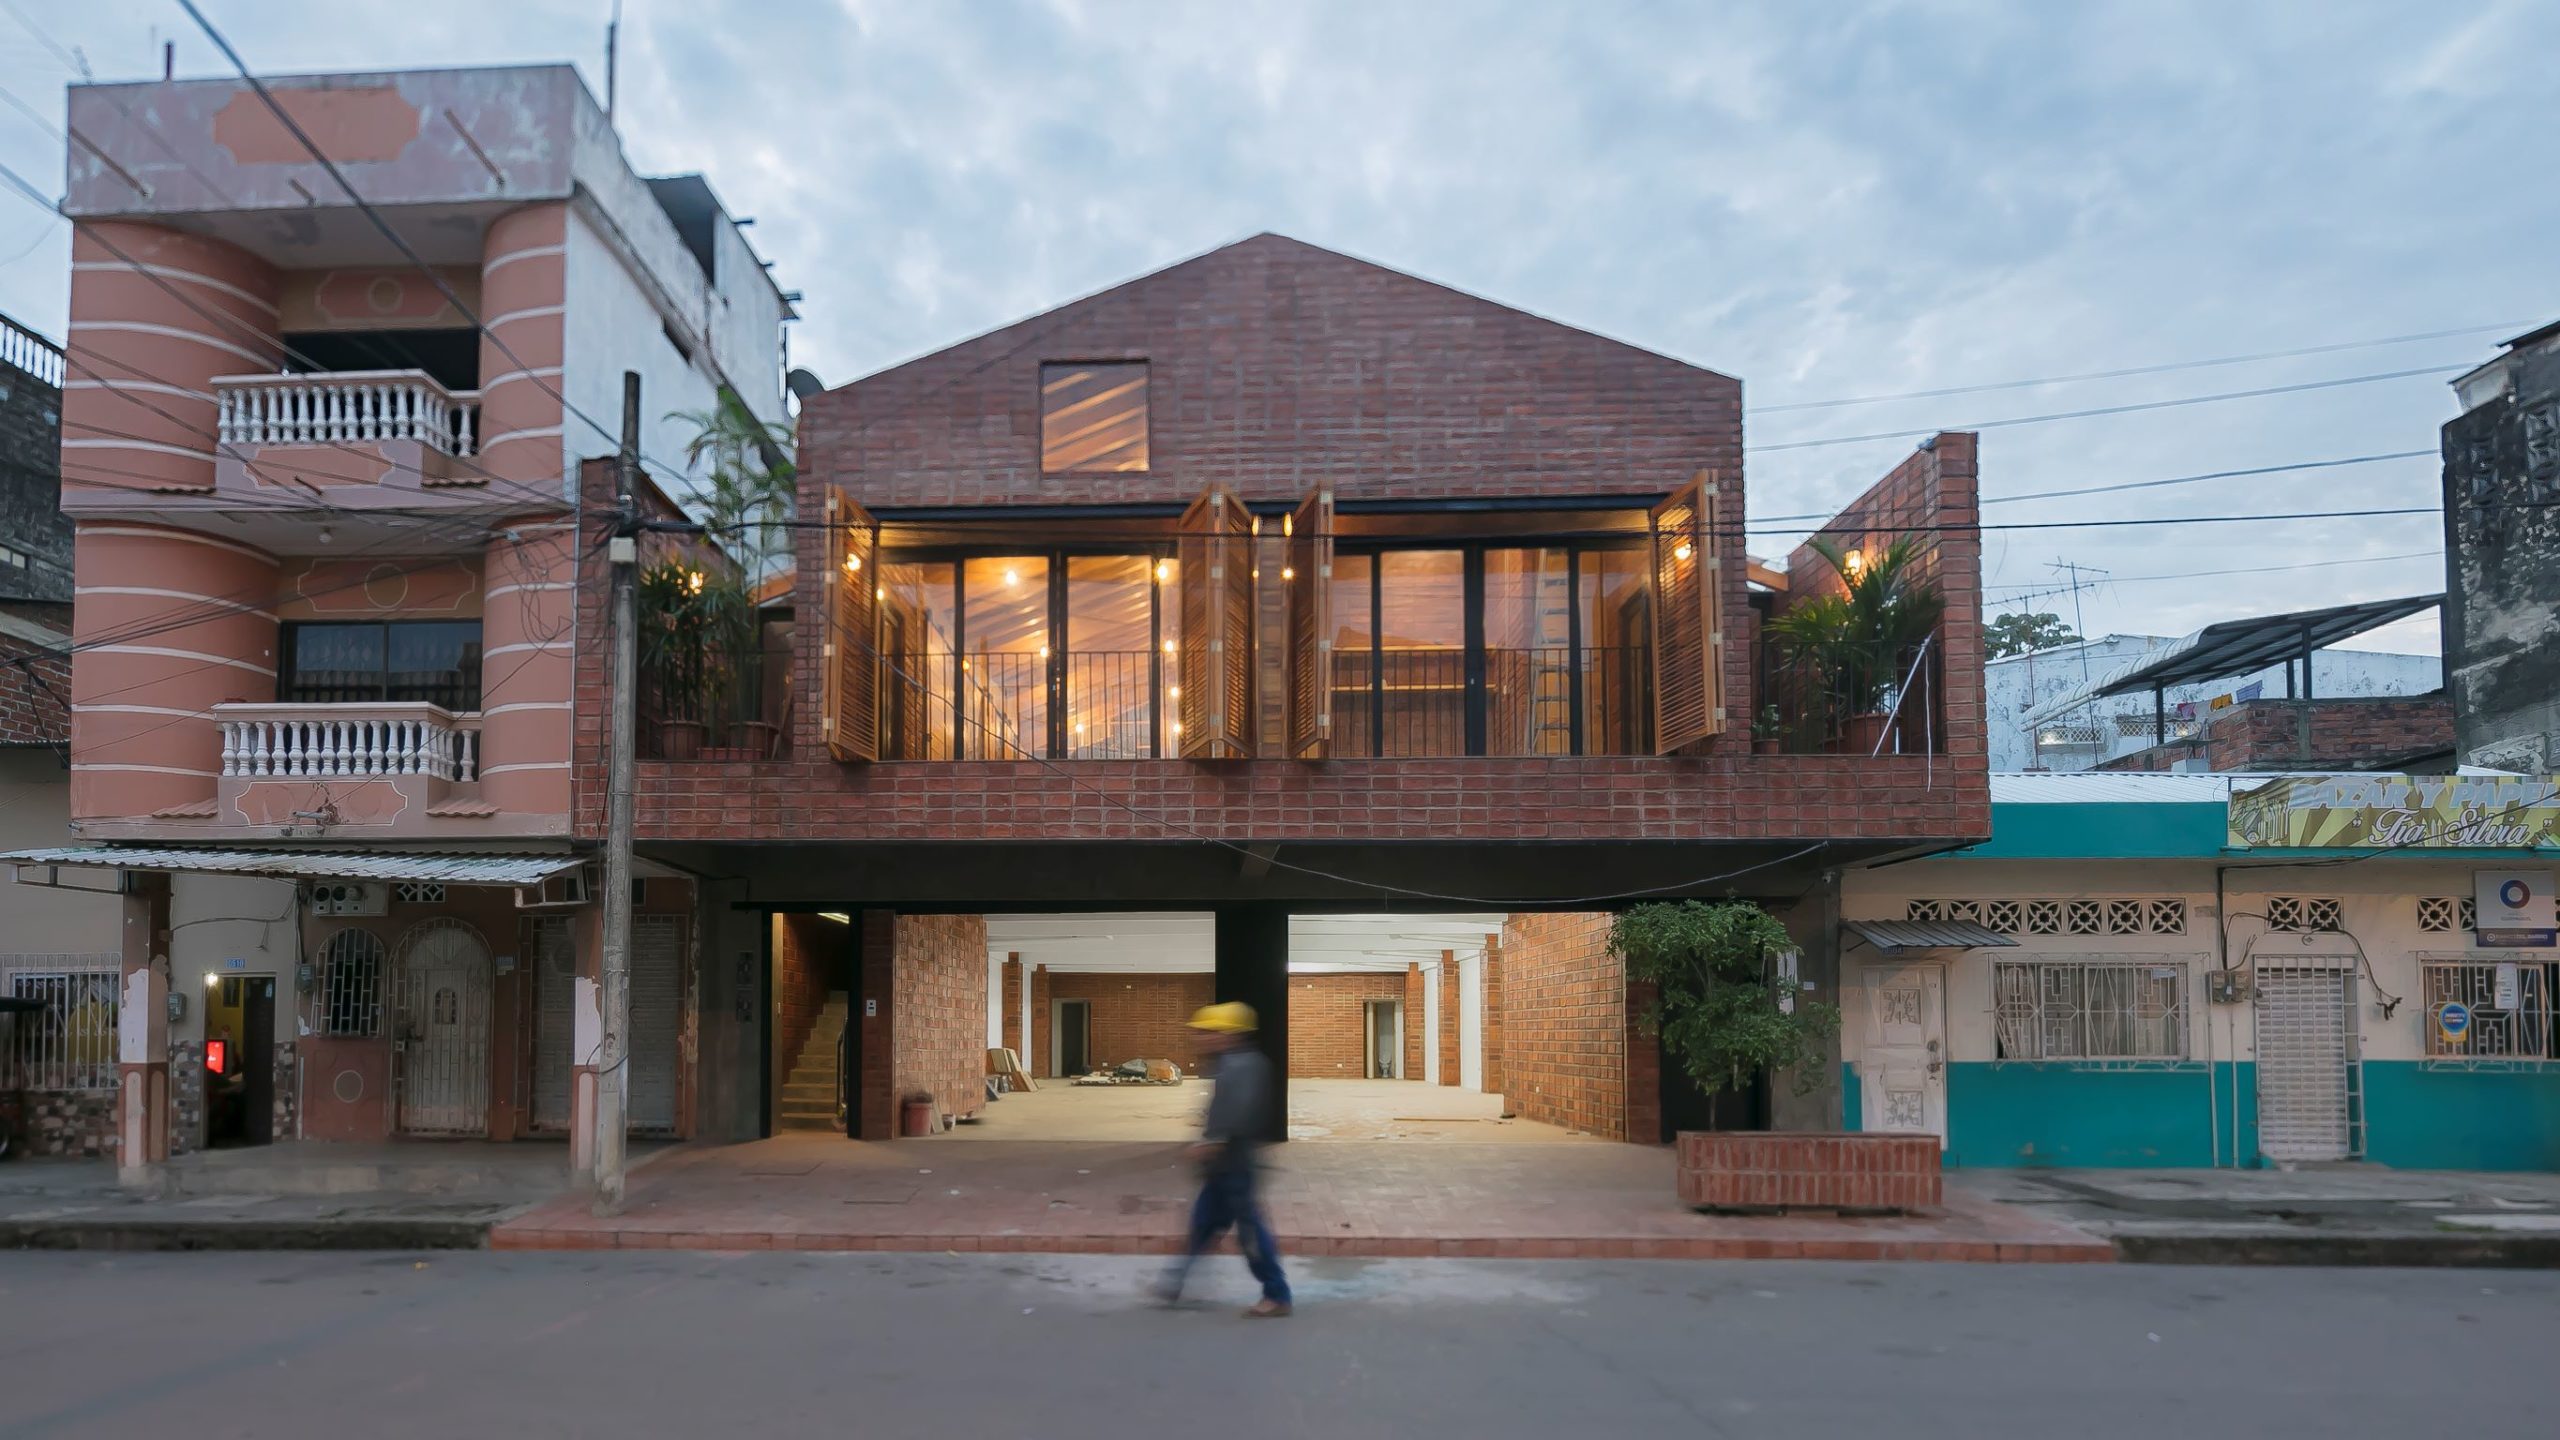 Víťaz kategórie „Feeling at home“: The House that Inhabits – Produktívne mestské bývanie (Ekvádor)